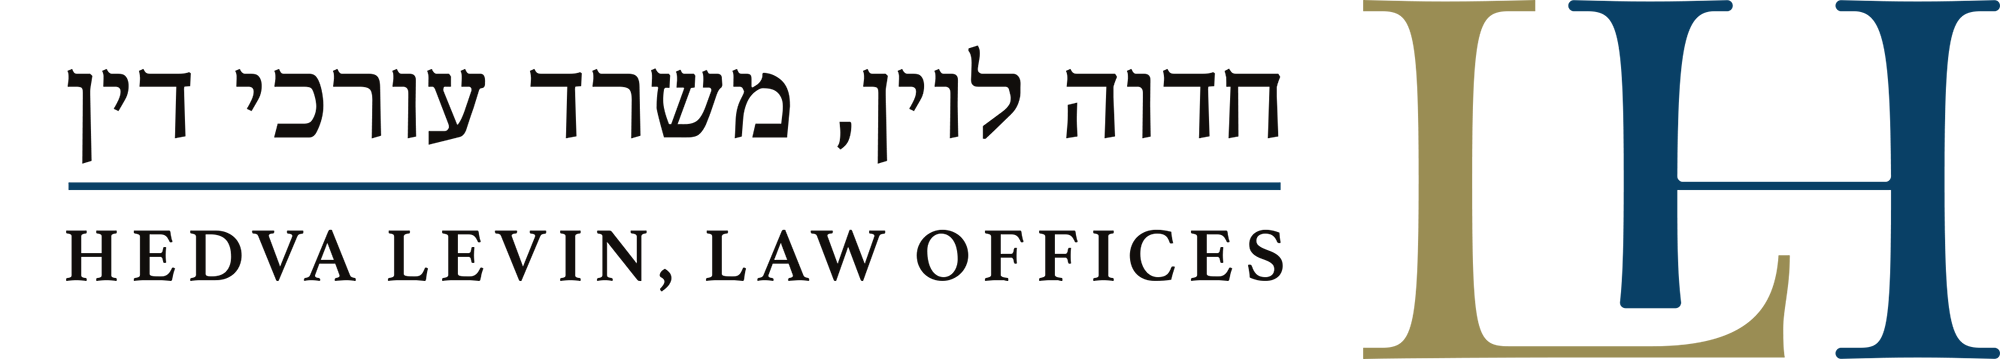 לוגו משרד עורכי דין פלילי חדוה לוין